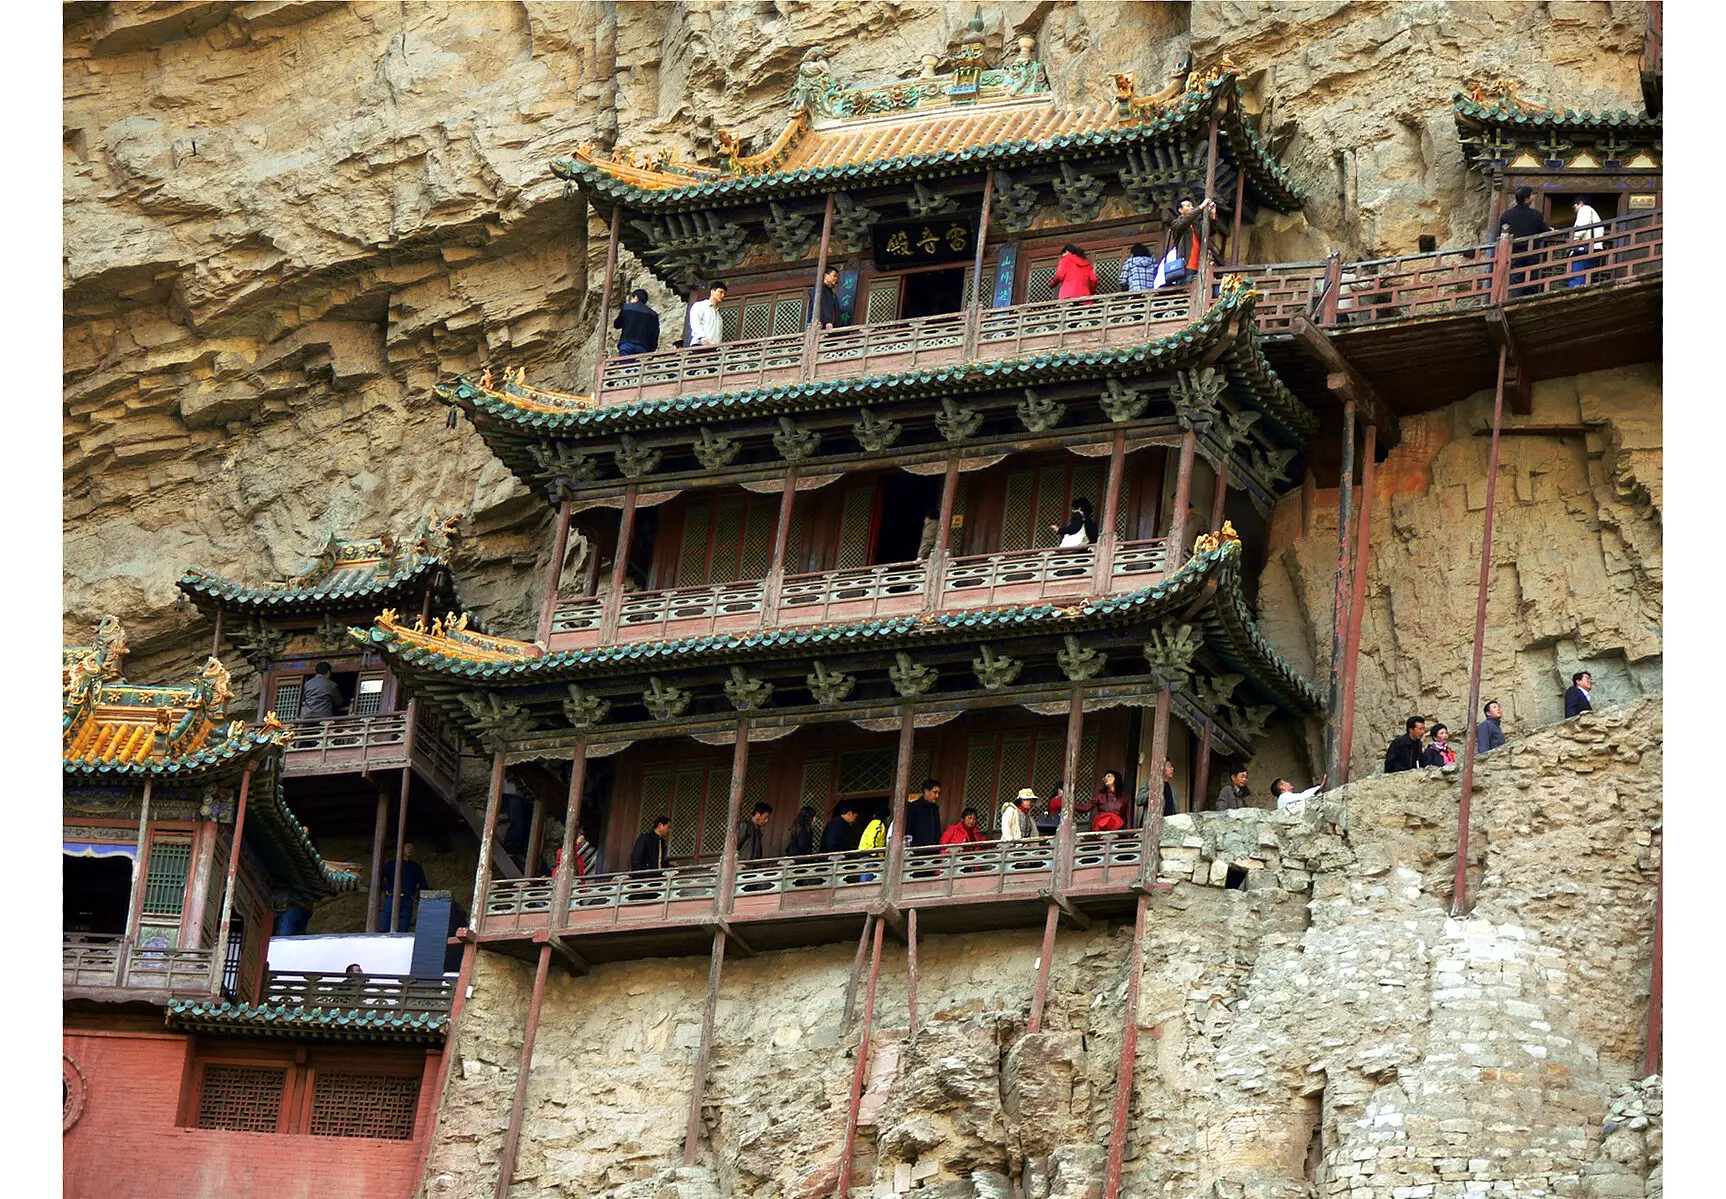 Xuankong: El monasterio suspendido a 75 metros del suelo, la maravilla arquitectónica que parece desafiar la gravedad